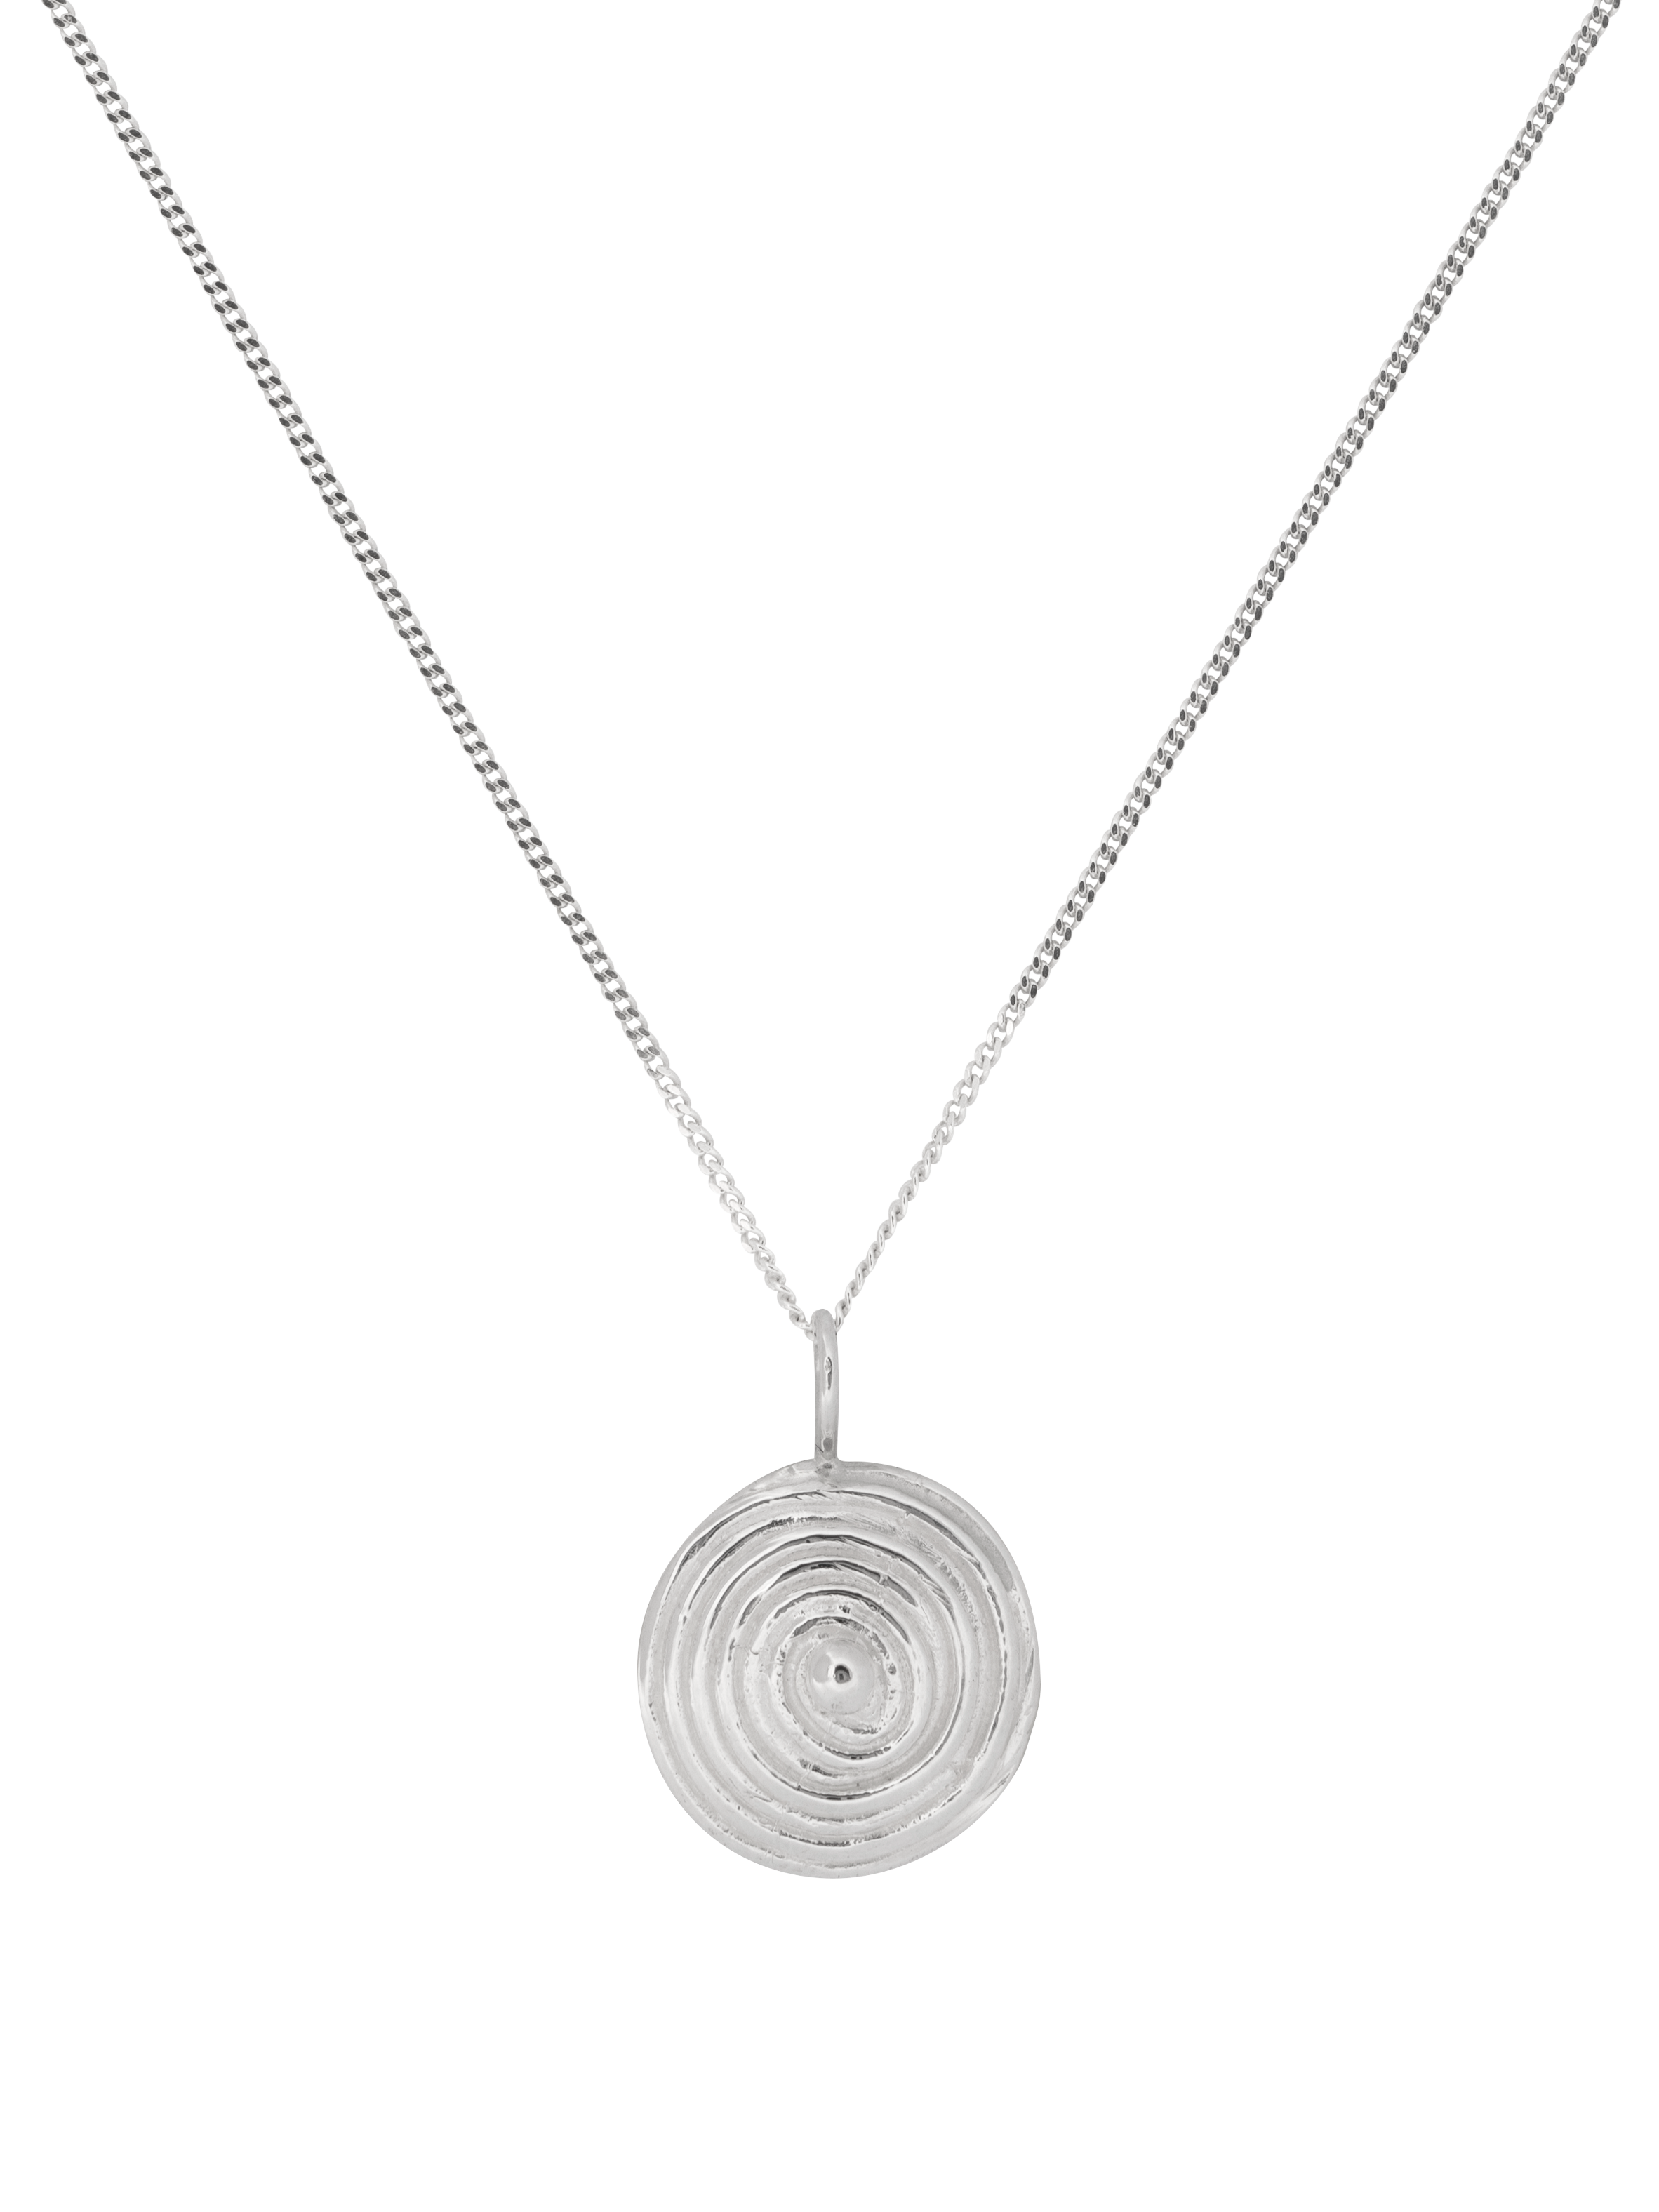 Zephyrus necklace